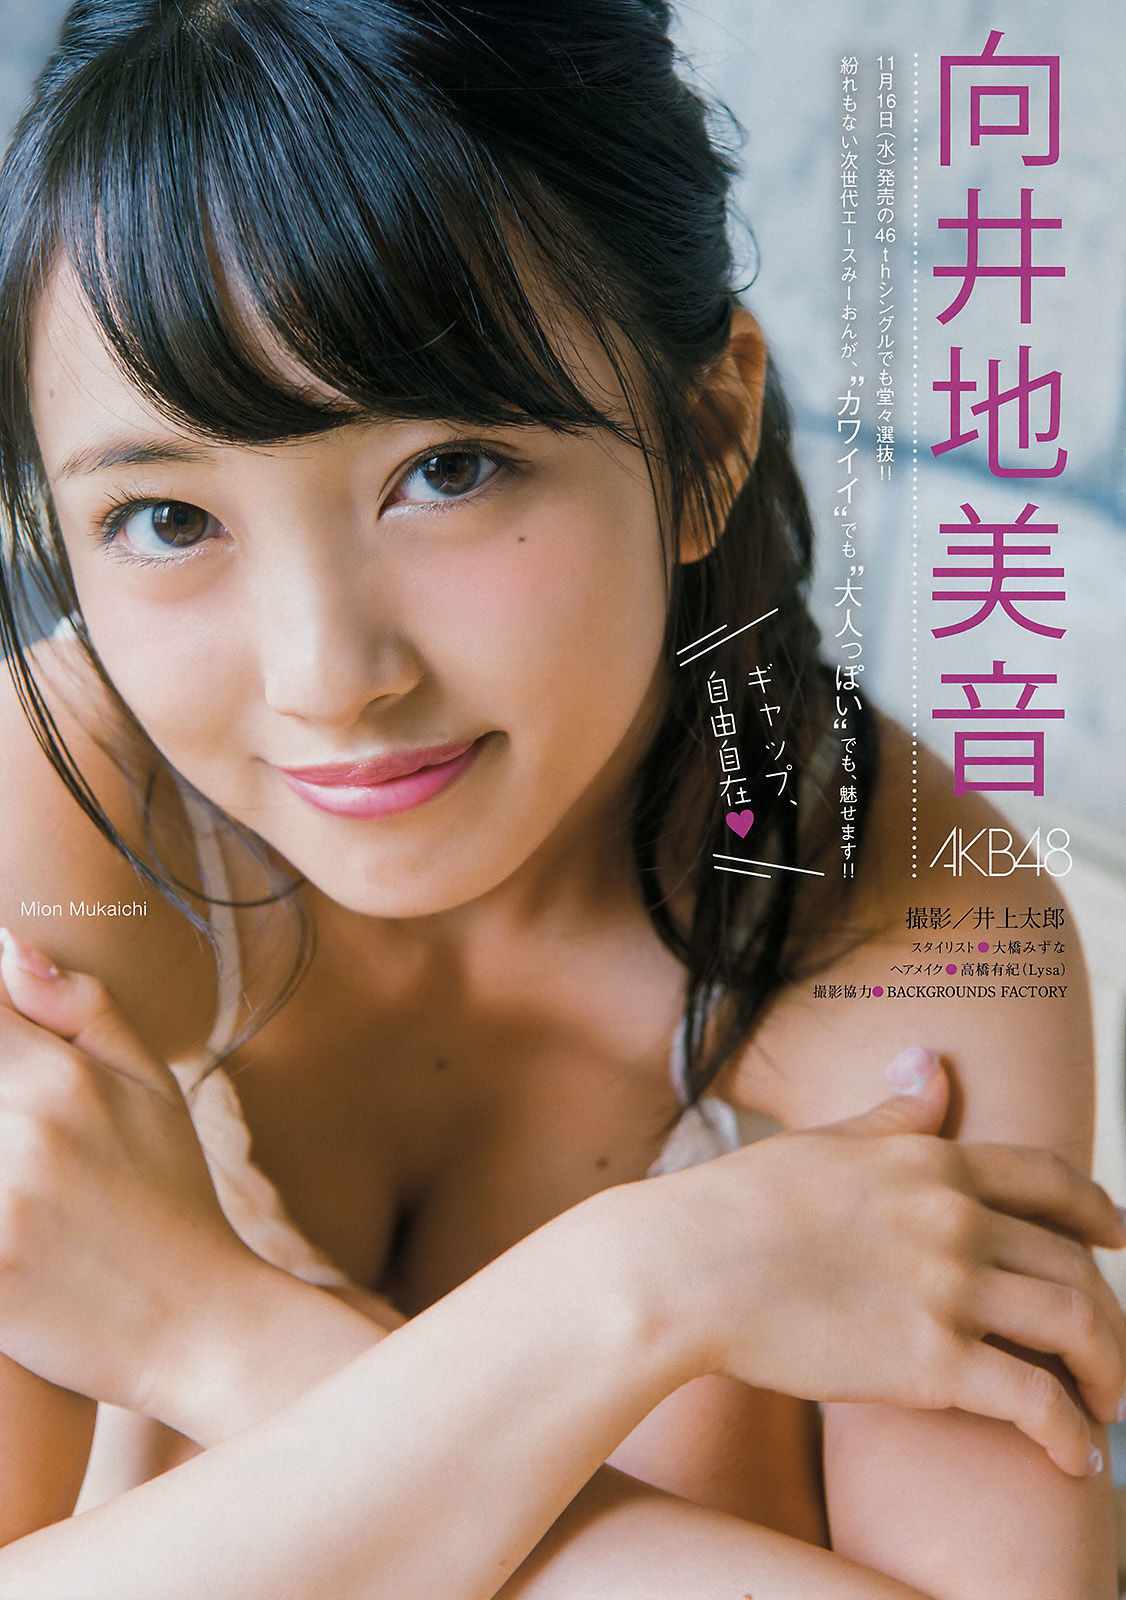 [Young Magazine] Mion Mukaichi Anna Yano 2016 No.46 Photograph Page 6 No.54b524